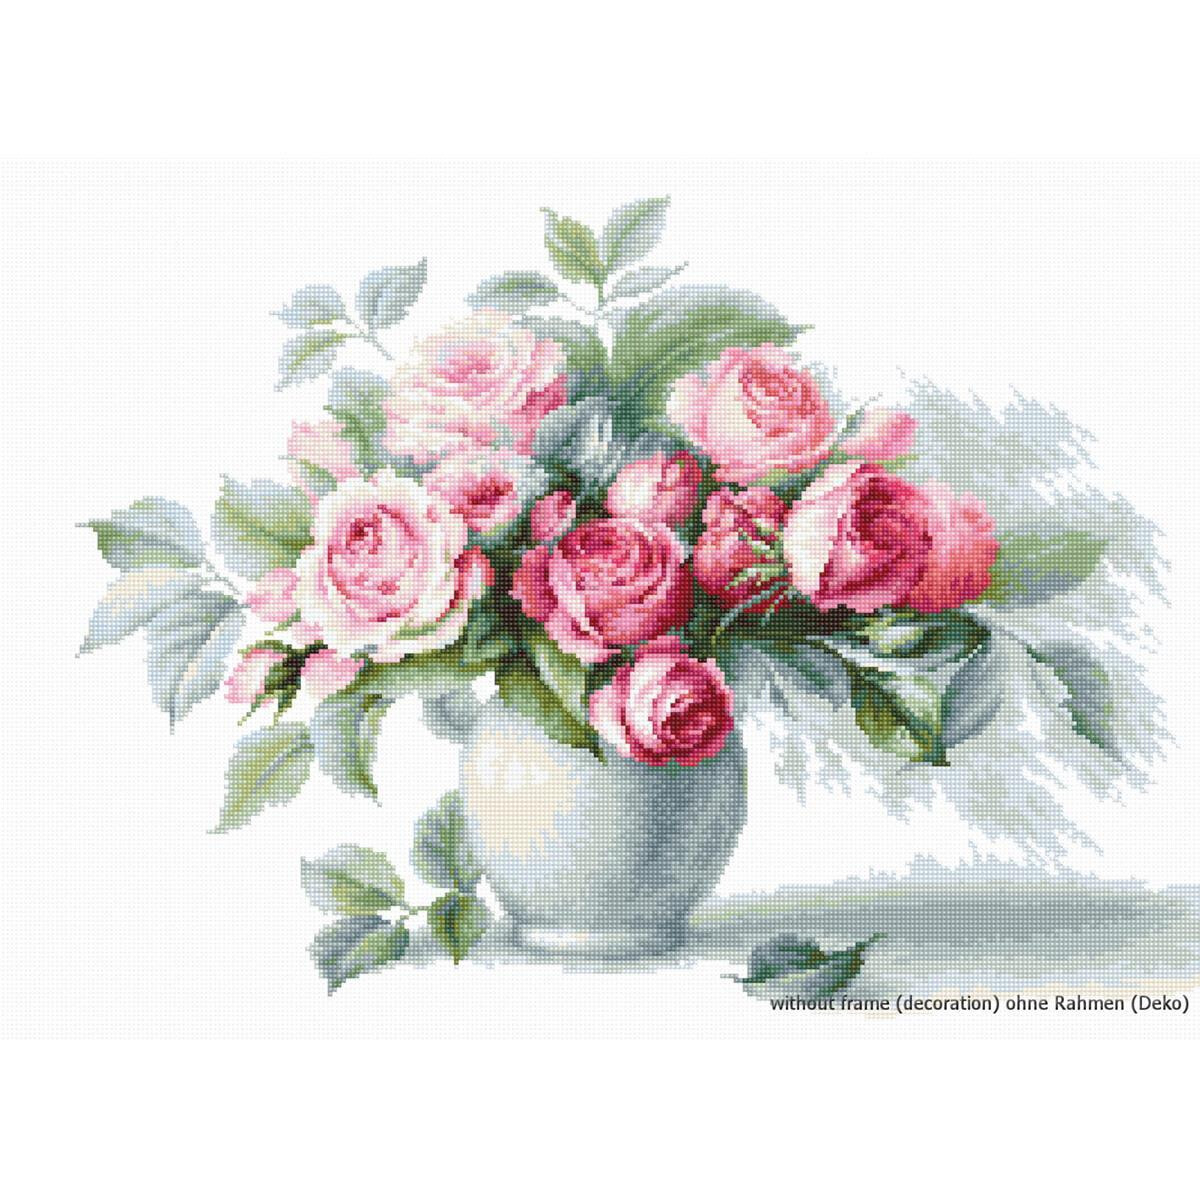 Un arreglo floral de rosas rosas y blancas con hojas...